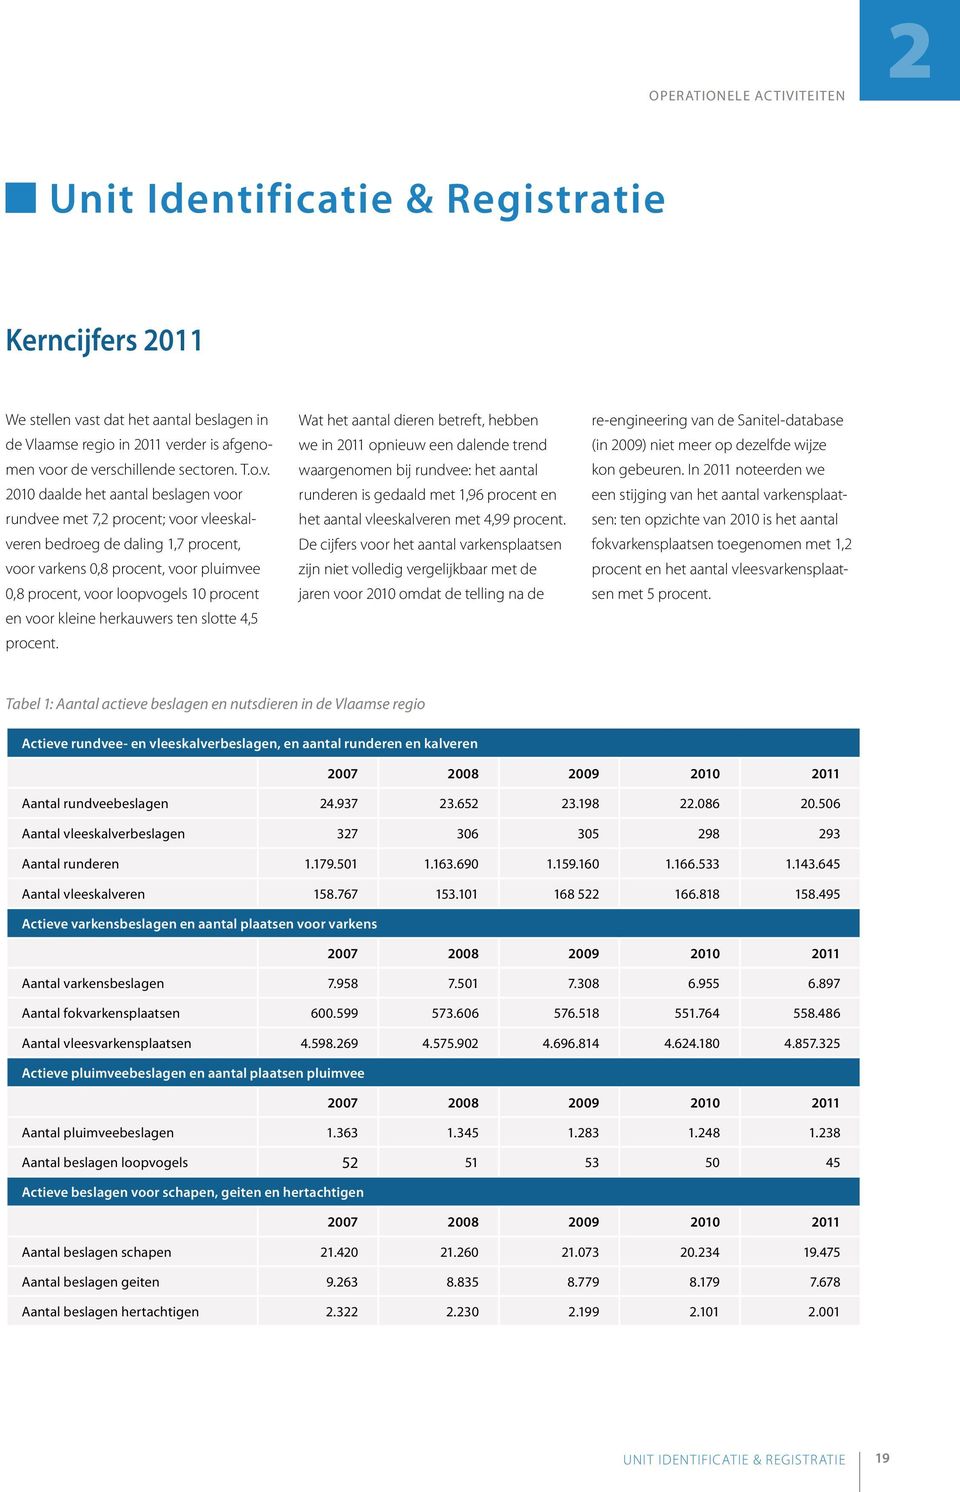 st dat het aantal beslagen in de Vlaamse regio in 2011 ve